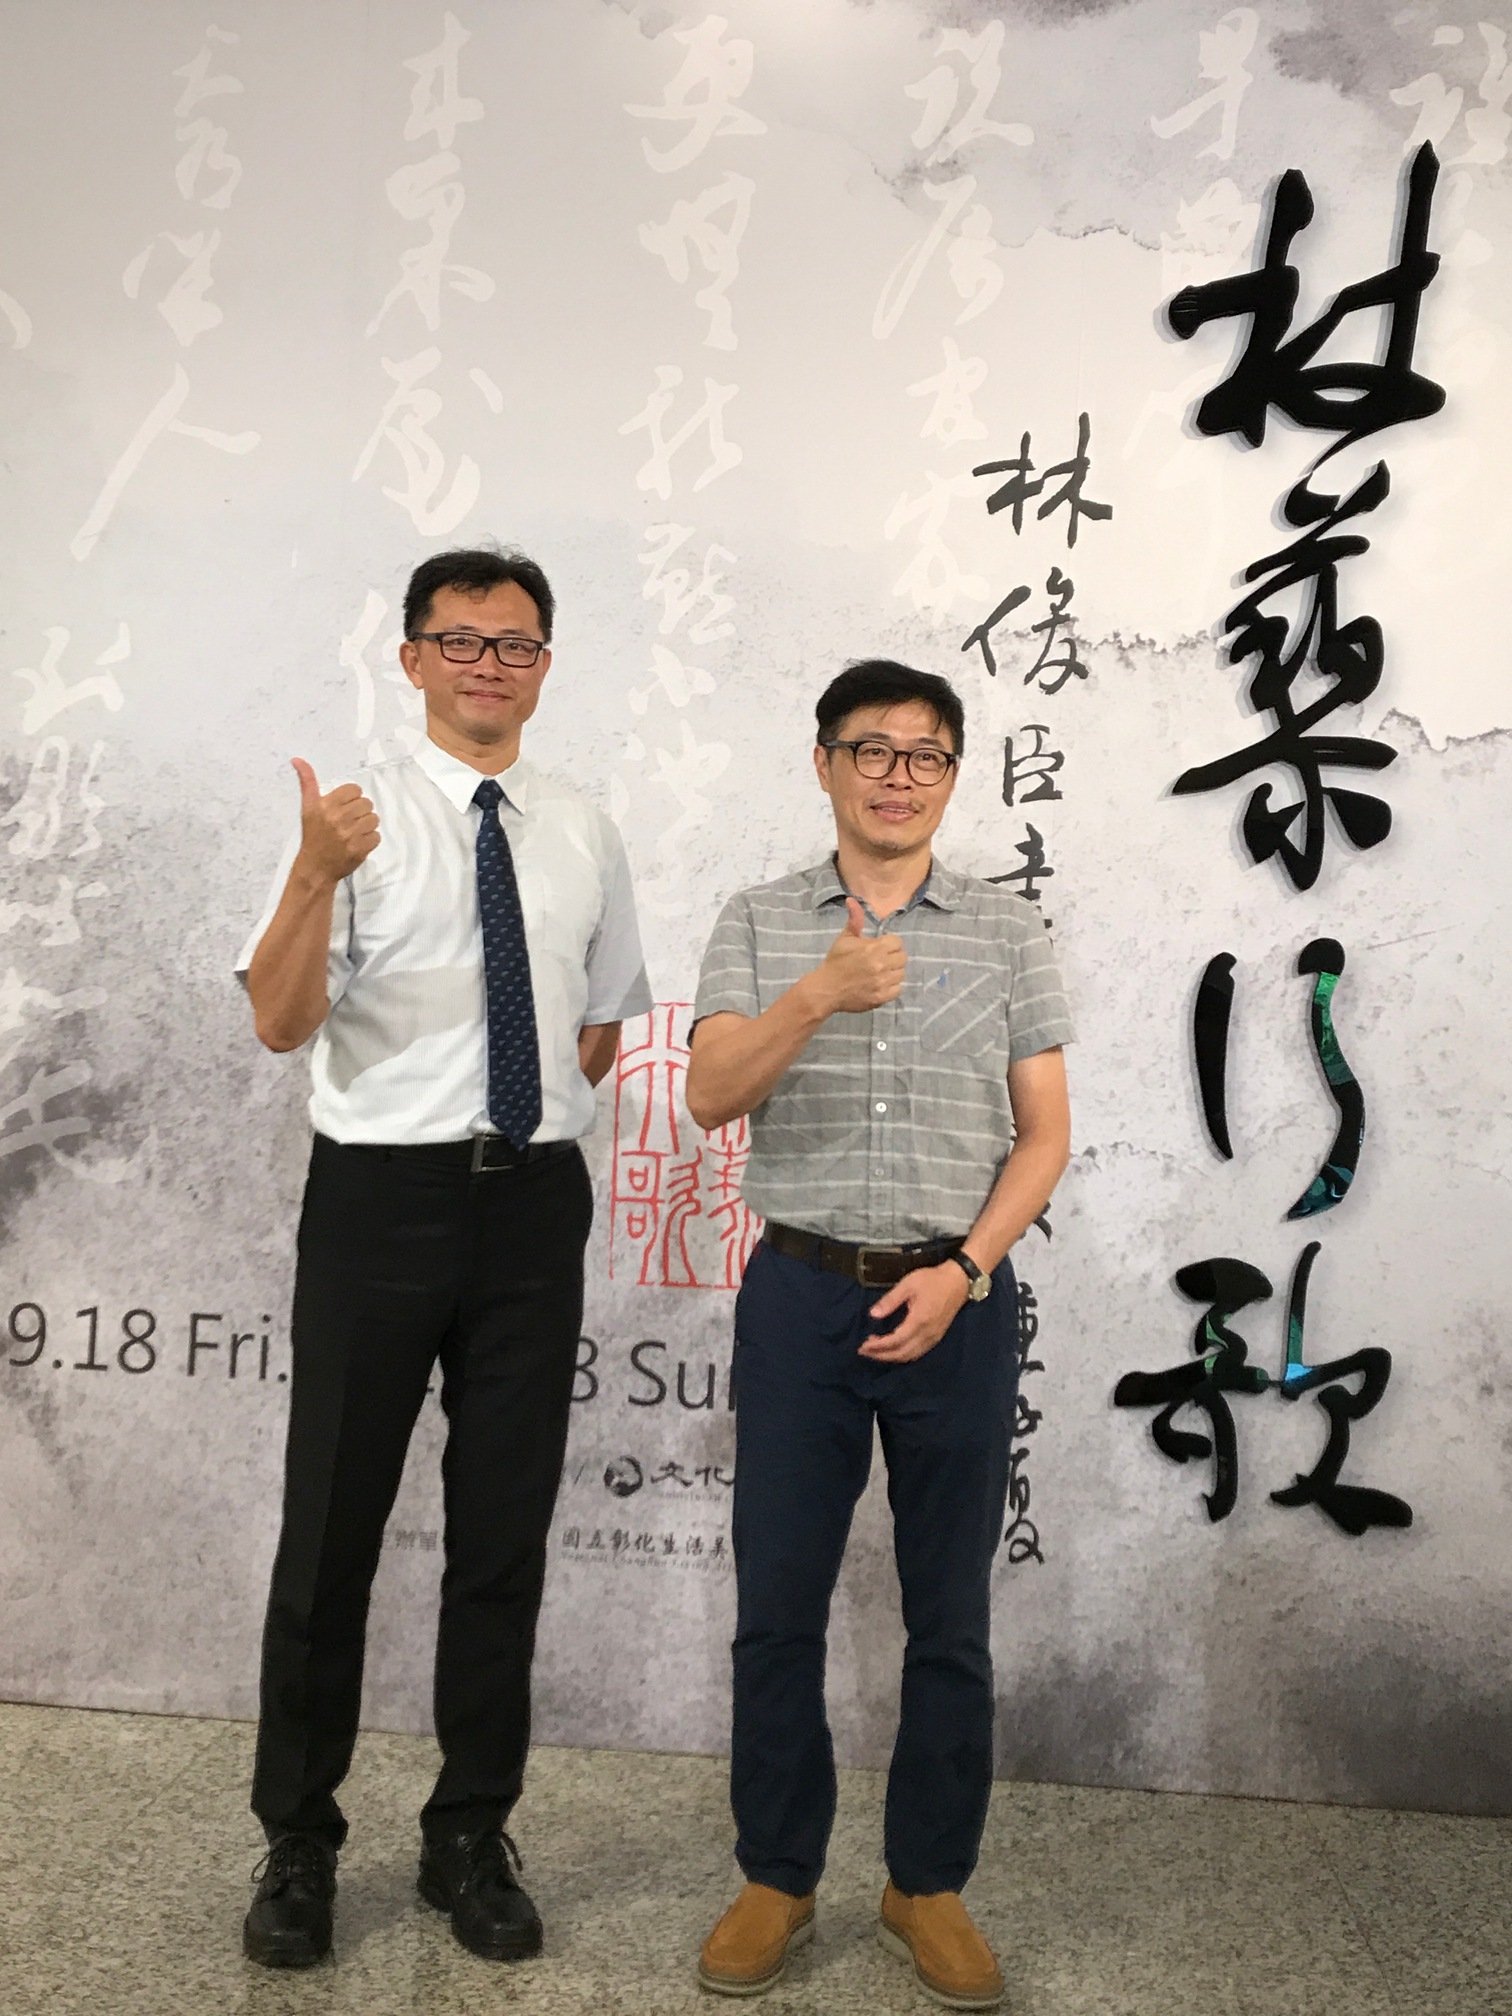 彰美館李明俊秘書(左)與作者林俊臣老師(右).JPG